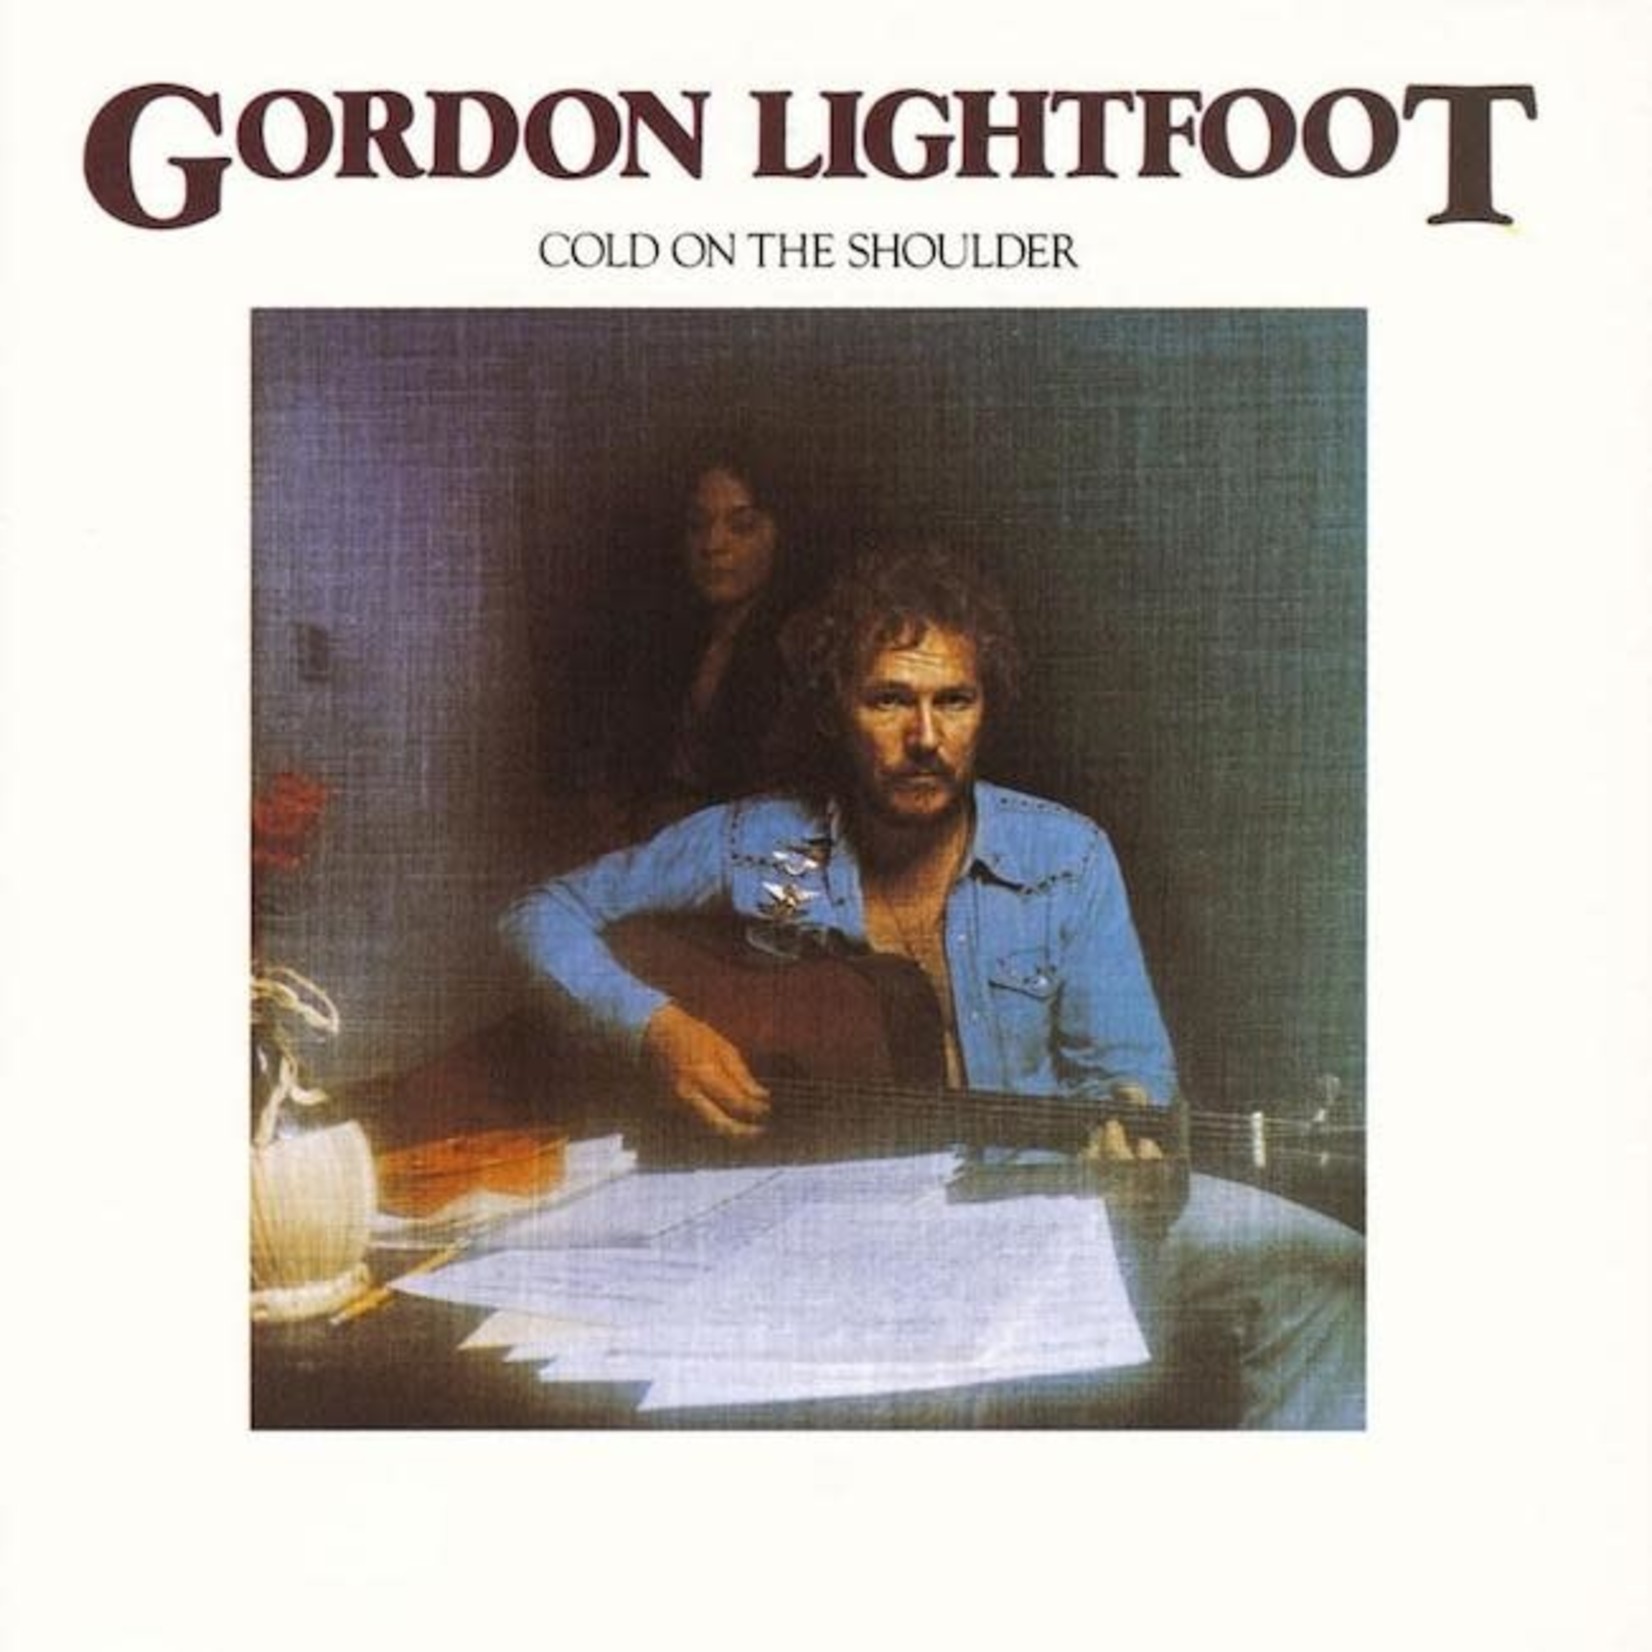 [Vintage] Gordon Lightfoot - Cold on the Shoulder